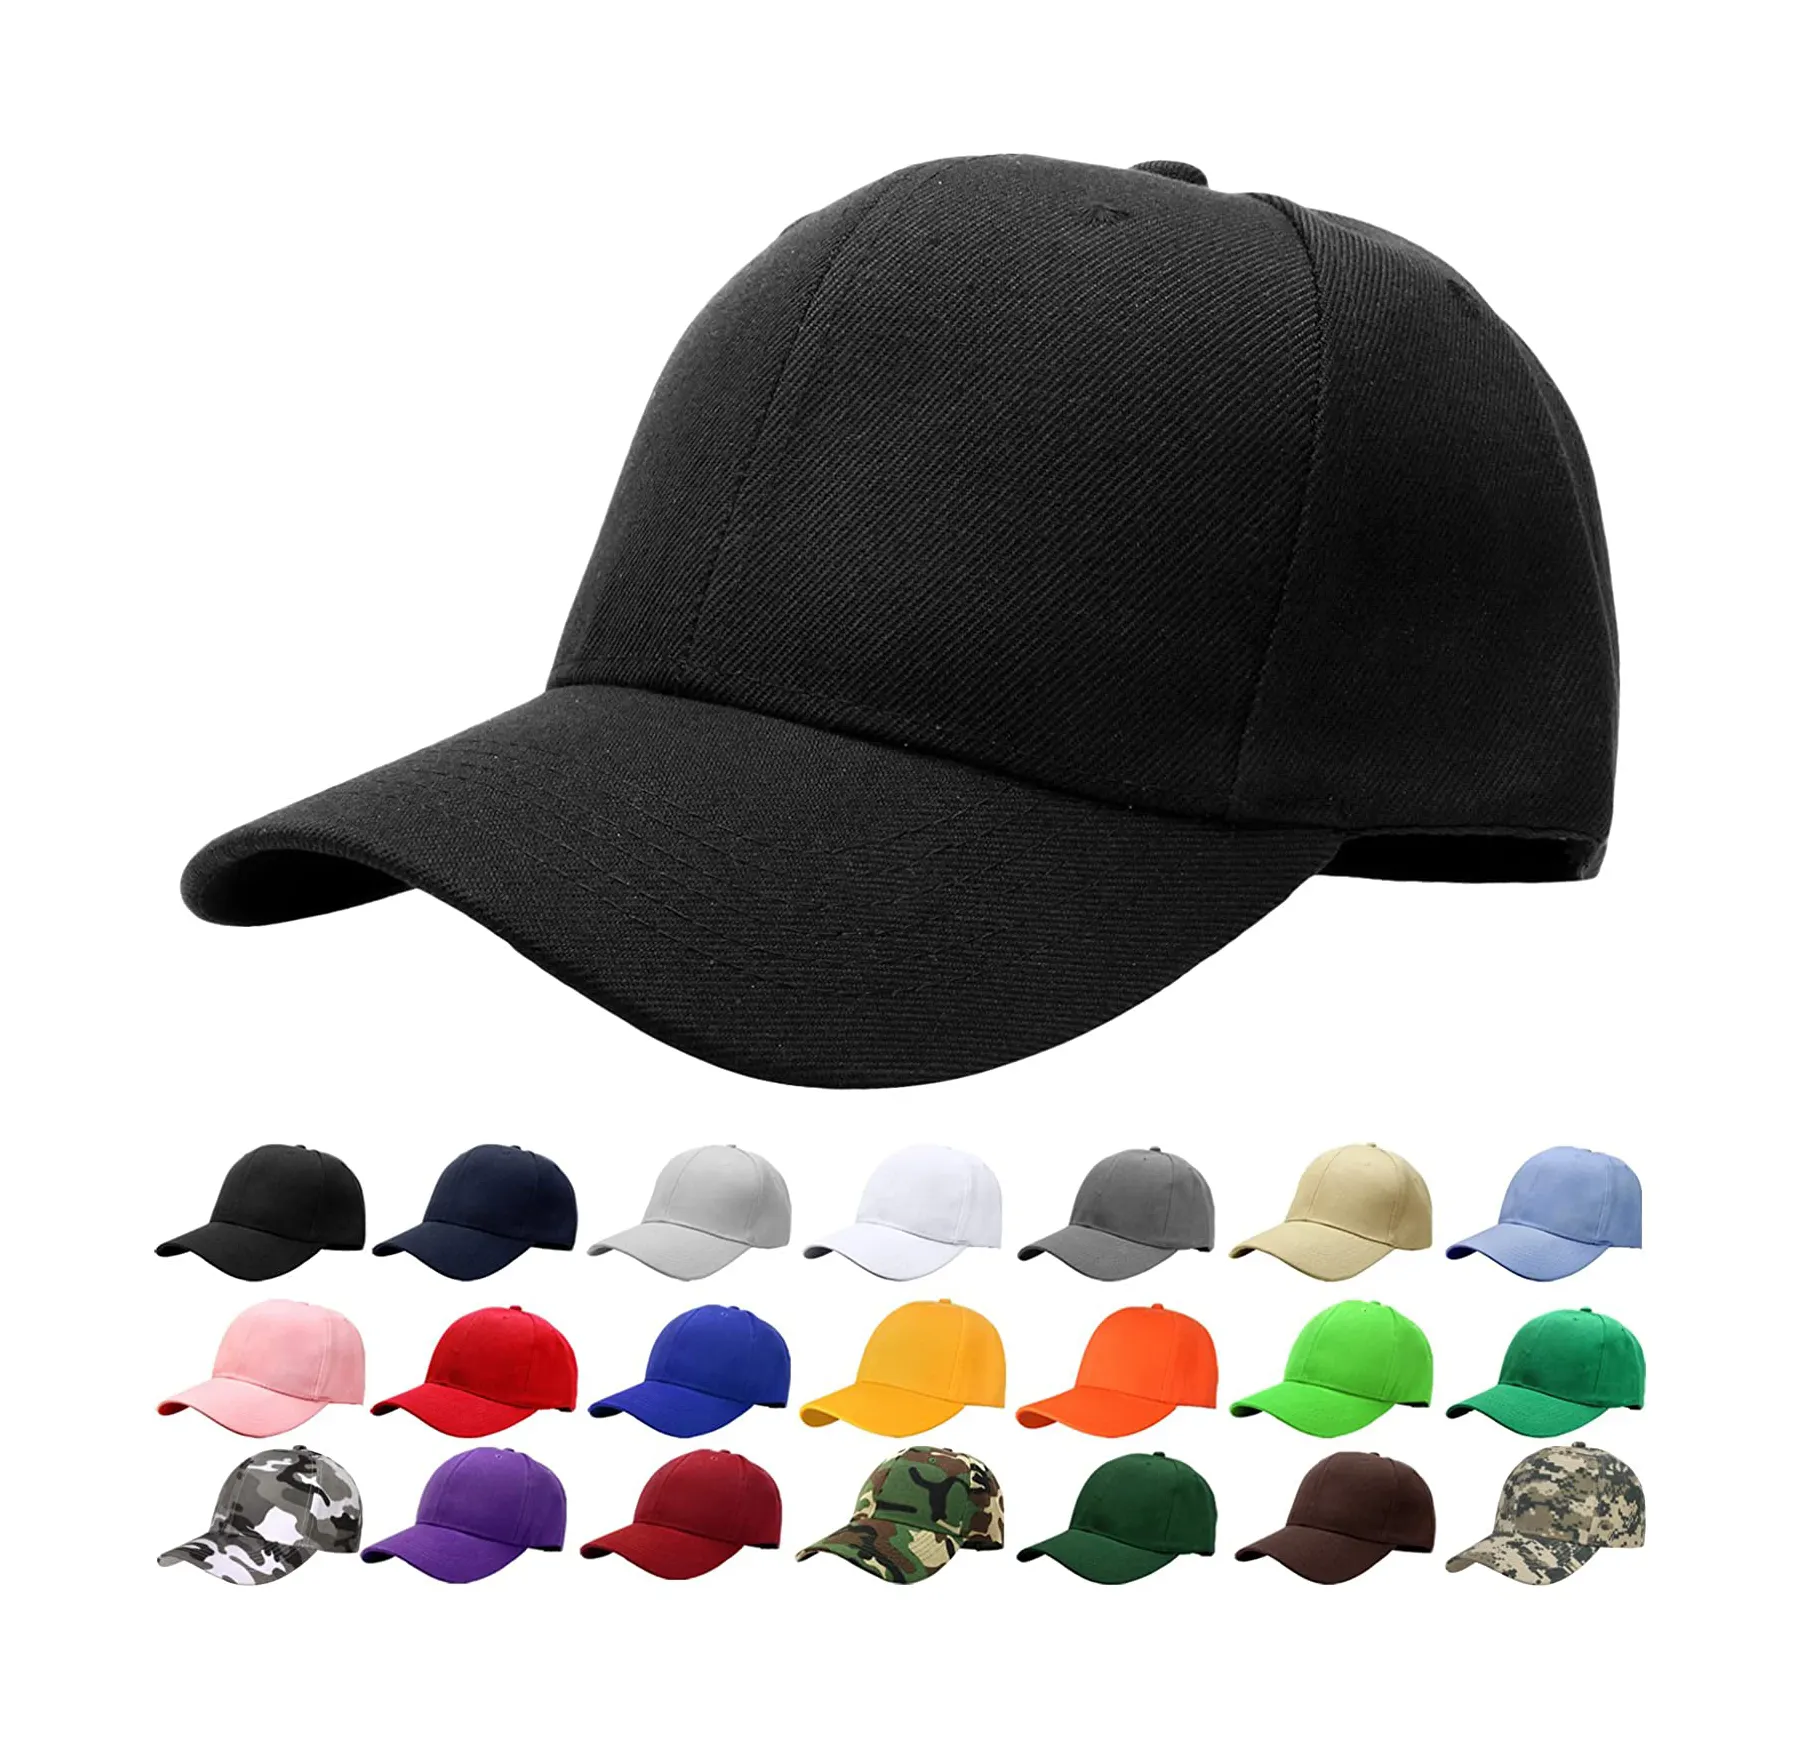 Sombrero ajustado deportivo gorra de béisbol elástica ajustada